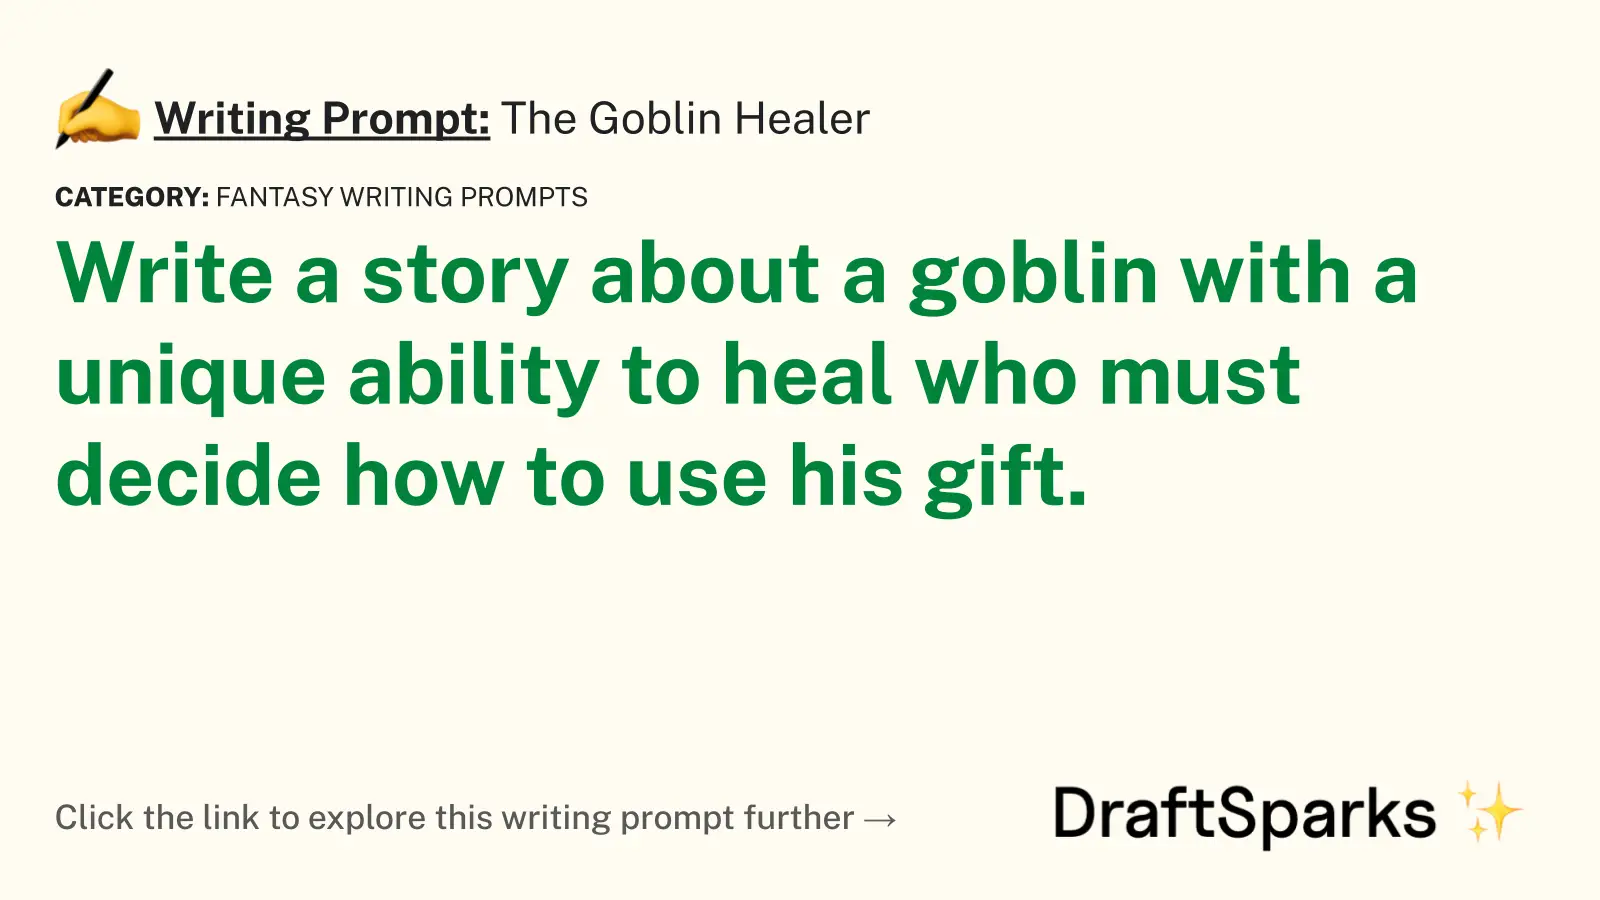 The Goblin Healer